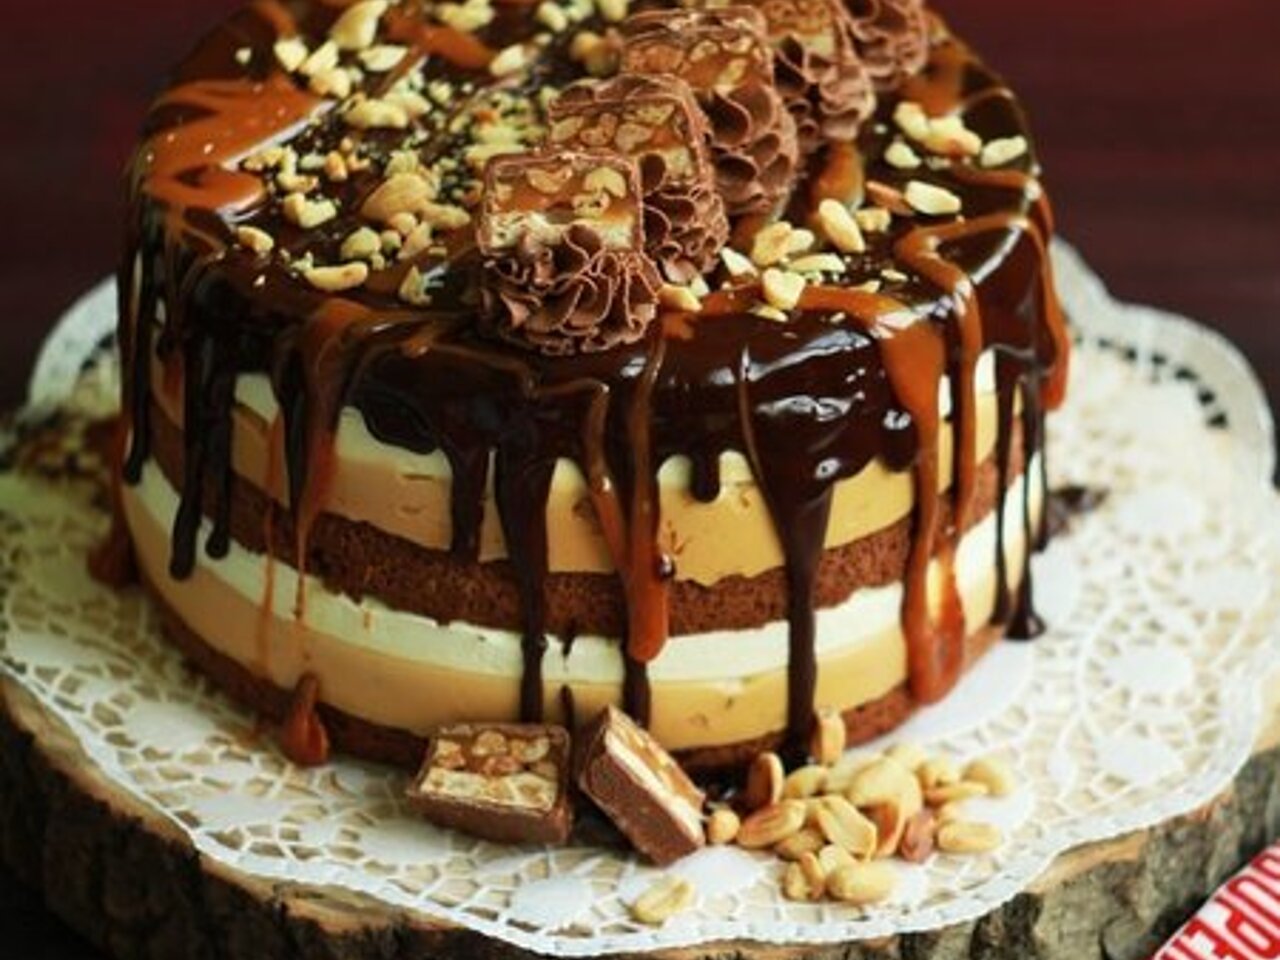 Ореховый торт - рецепты с фото на натяжныепотолкибрянск.рф (77 рецептов орехового торта)